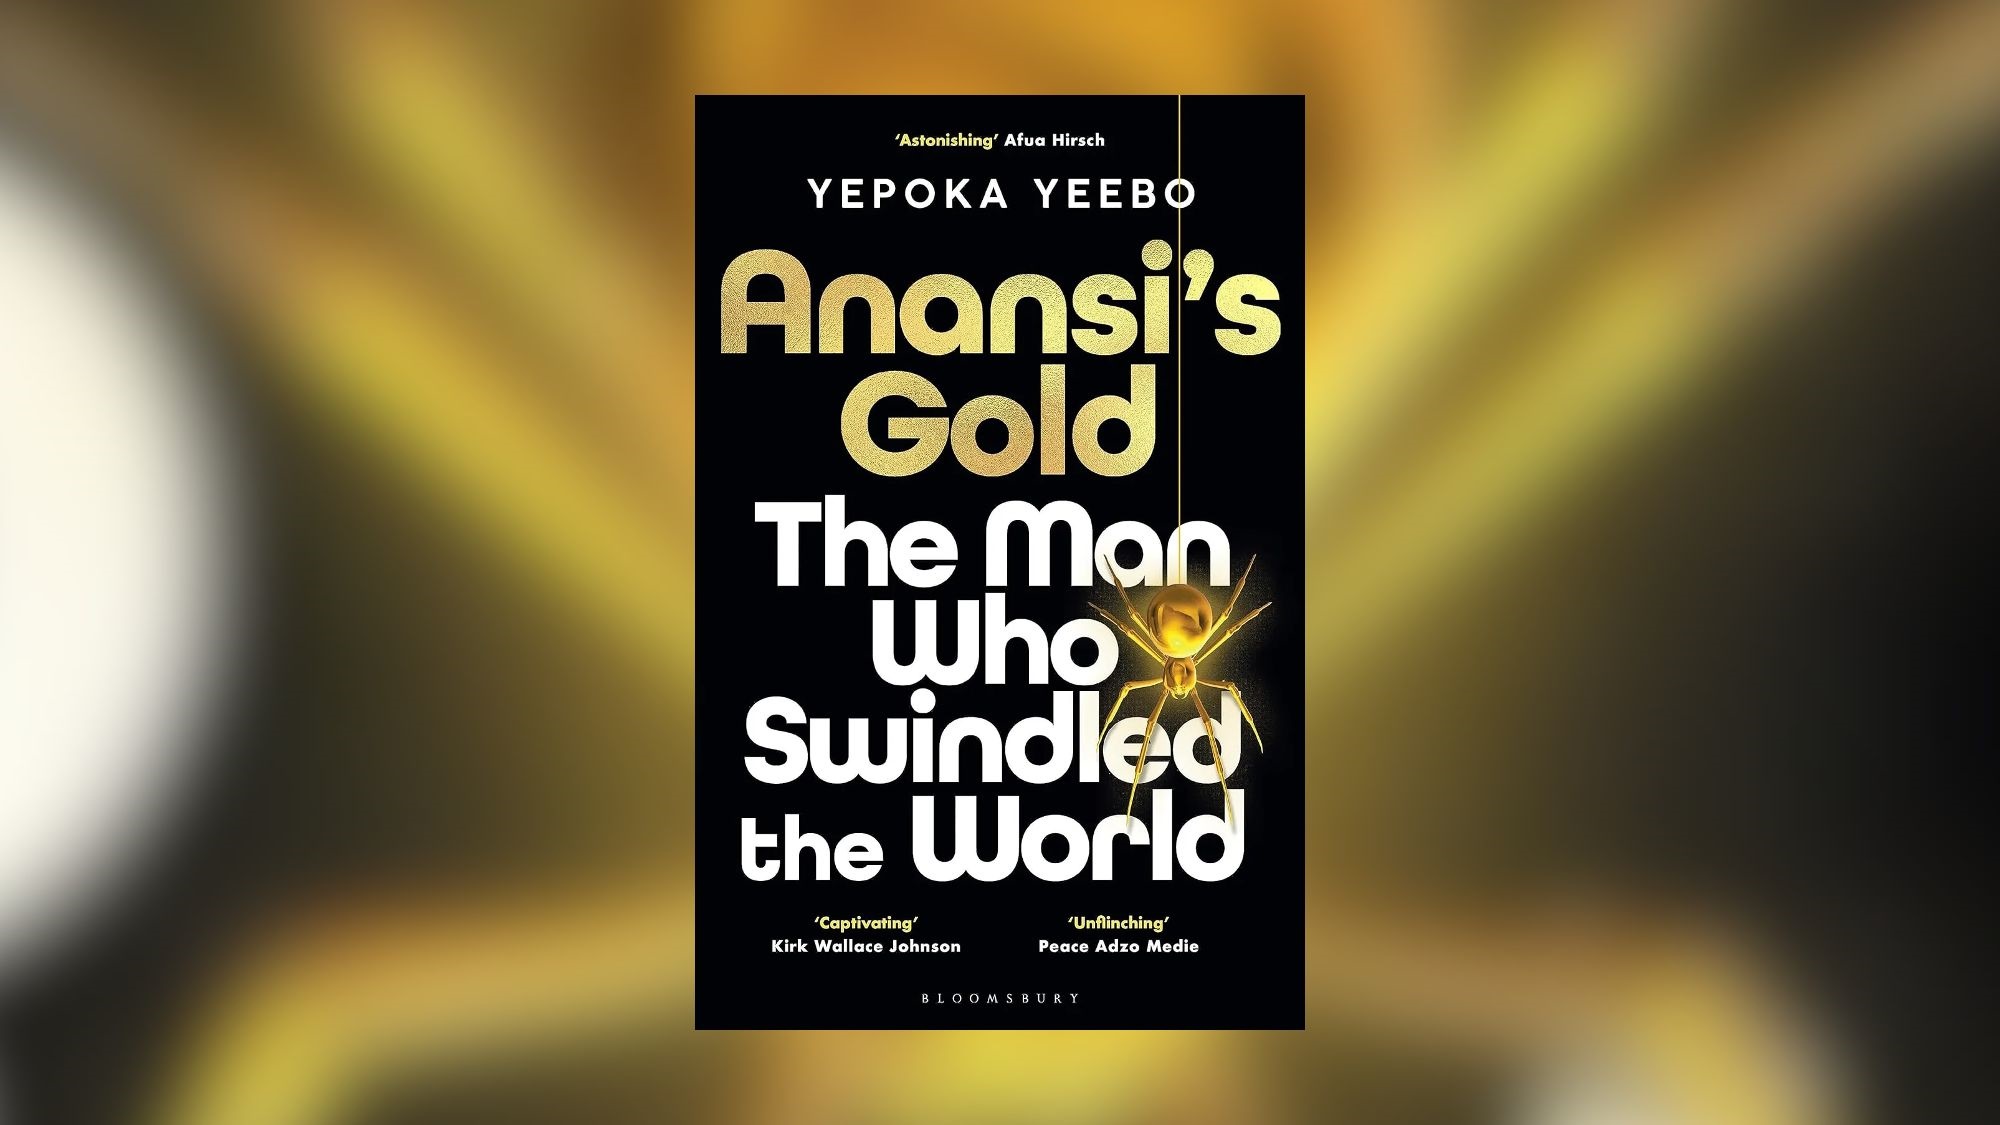 Anansi's Gold by Yepoka Yeebo